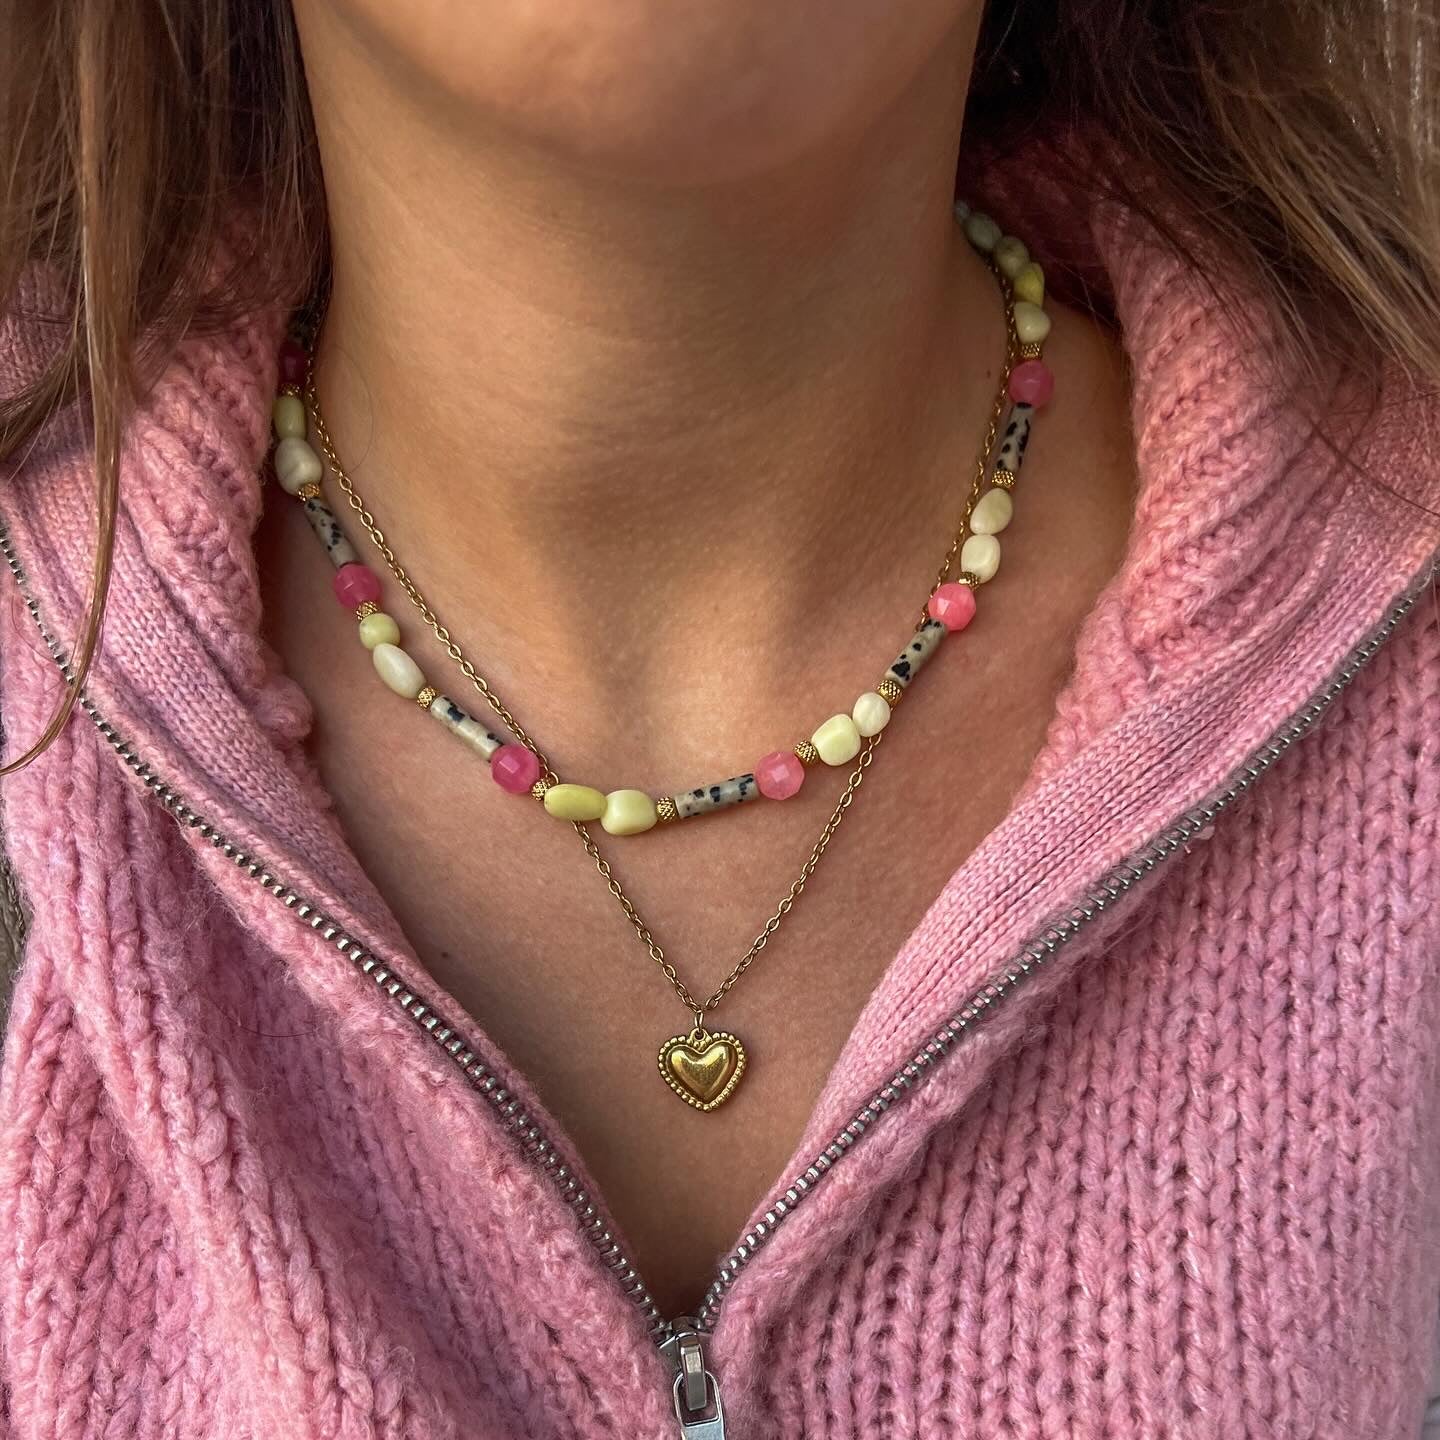 Bonnie necklaces